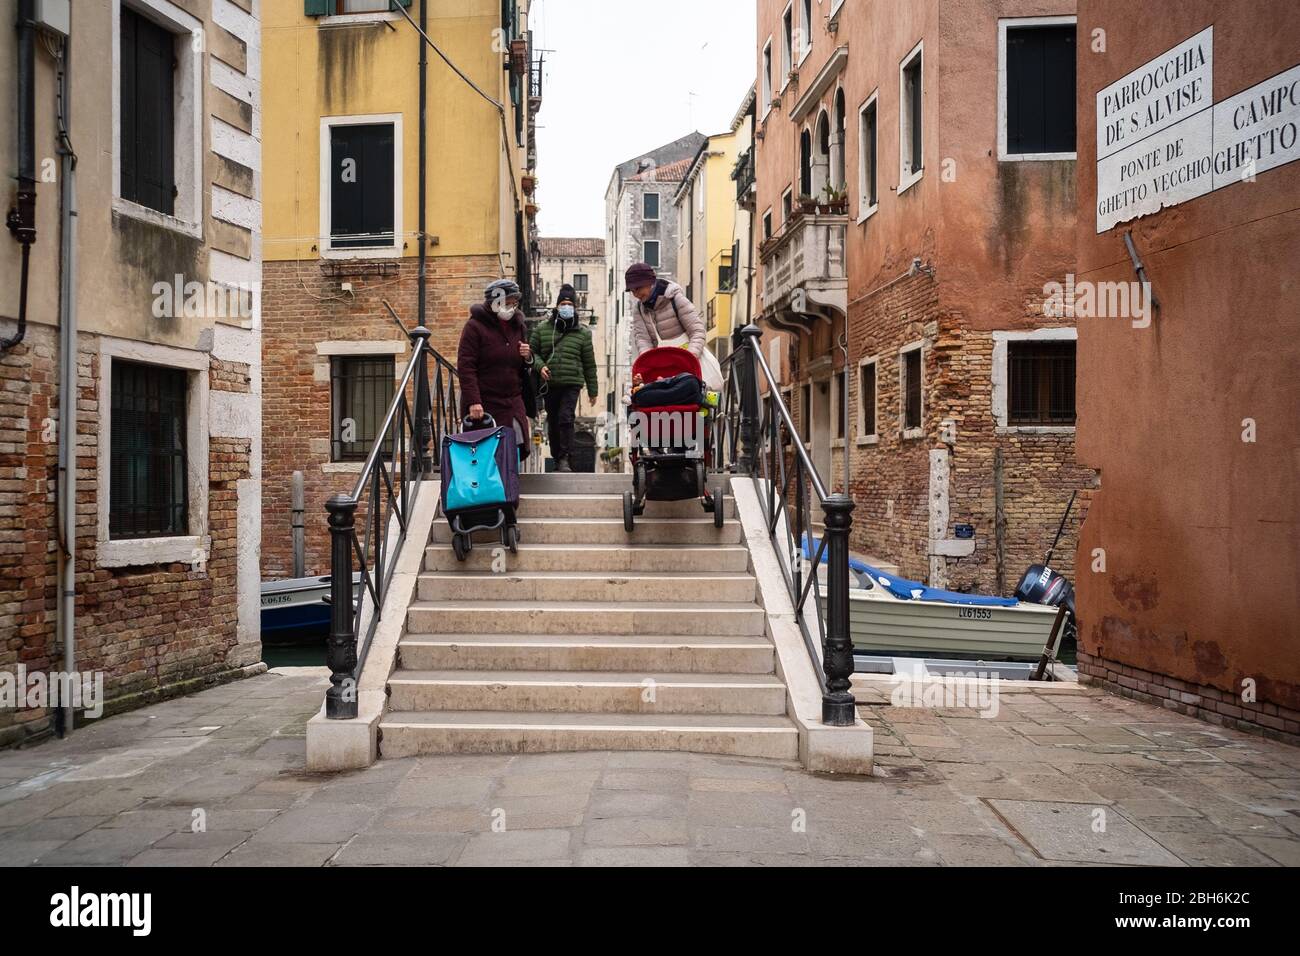 VENEDIG, ITALIEN - APRIL 2020: Menschen mit Schutzmasken überqueren eine Brücke im jüdischen Ghetto von Venedig während der nationalen Sperre für Covid-19 pande Stockfoto